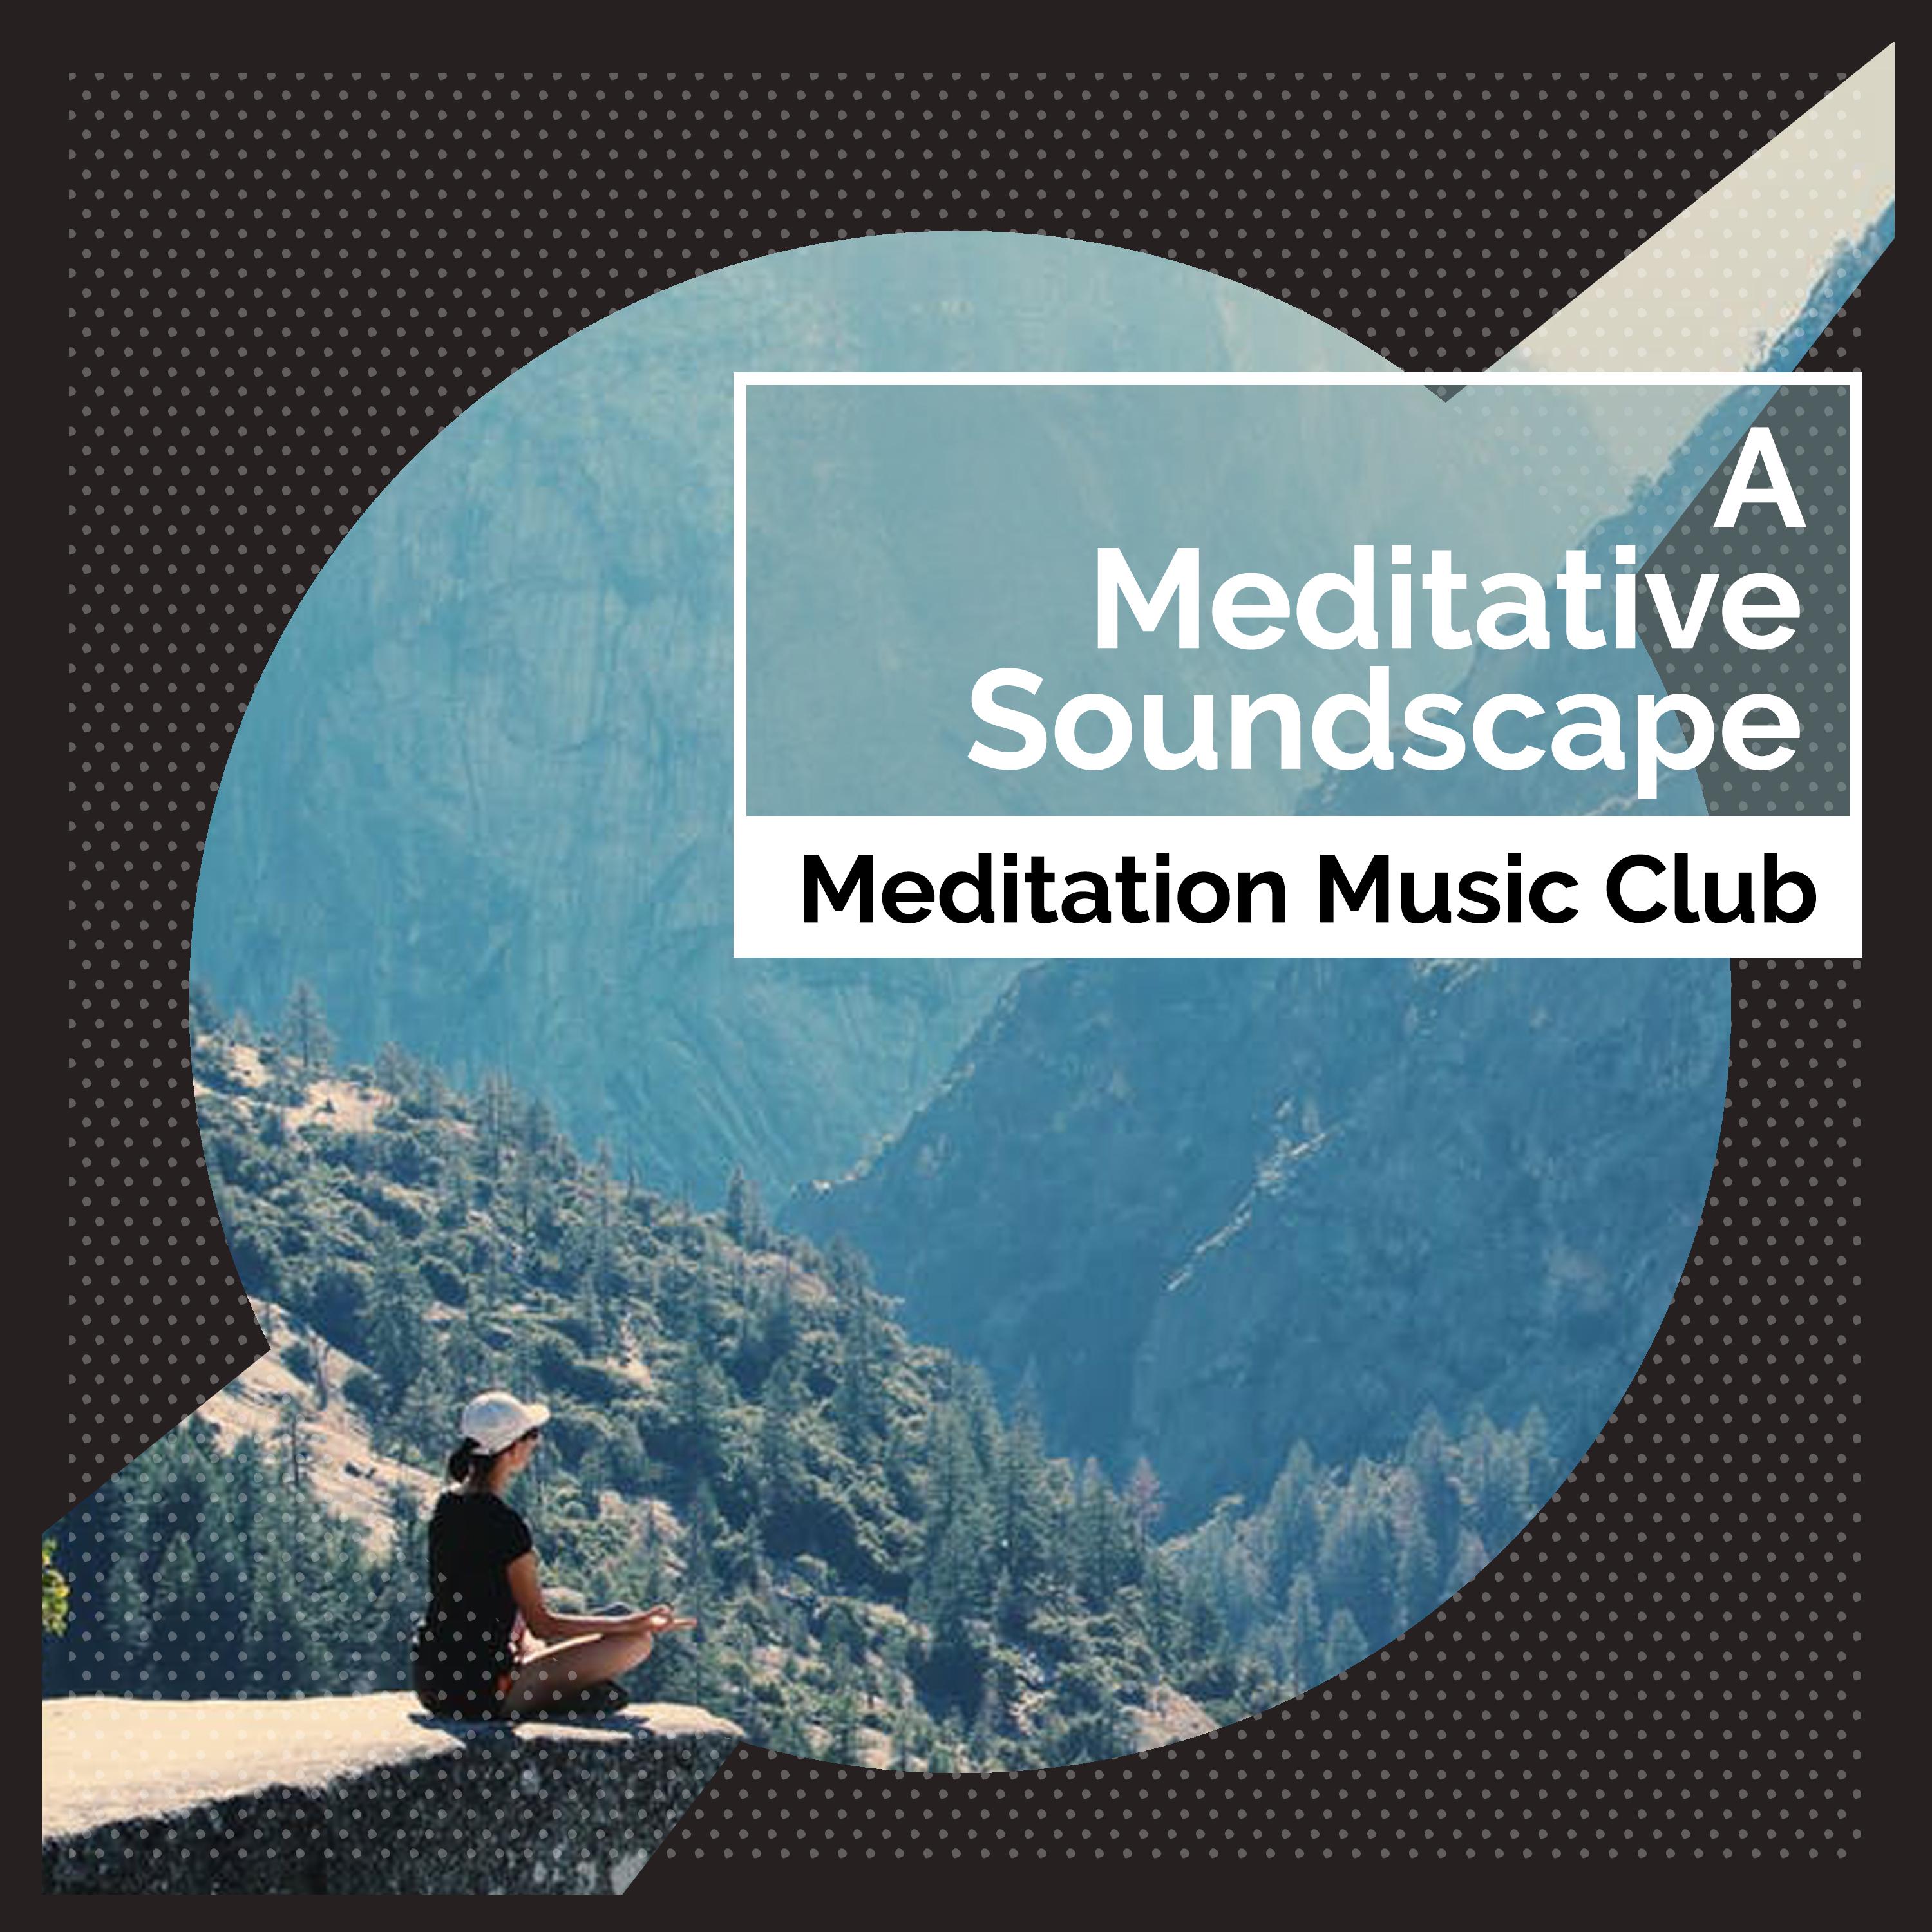 A Meditative Soundscape